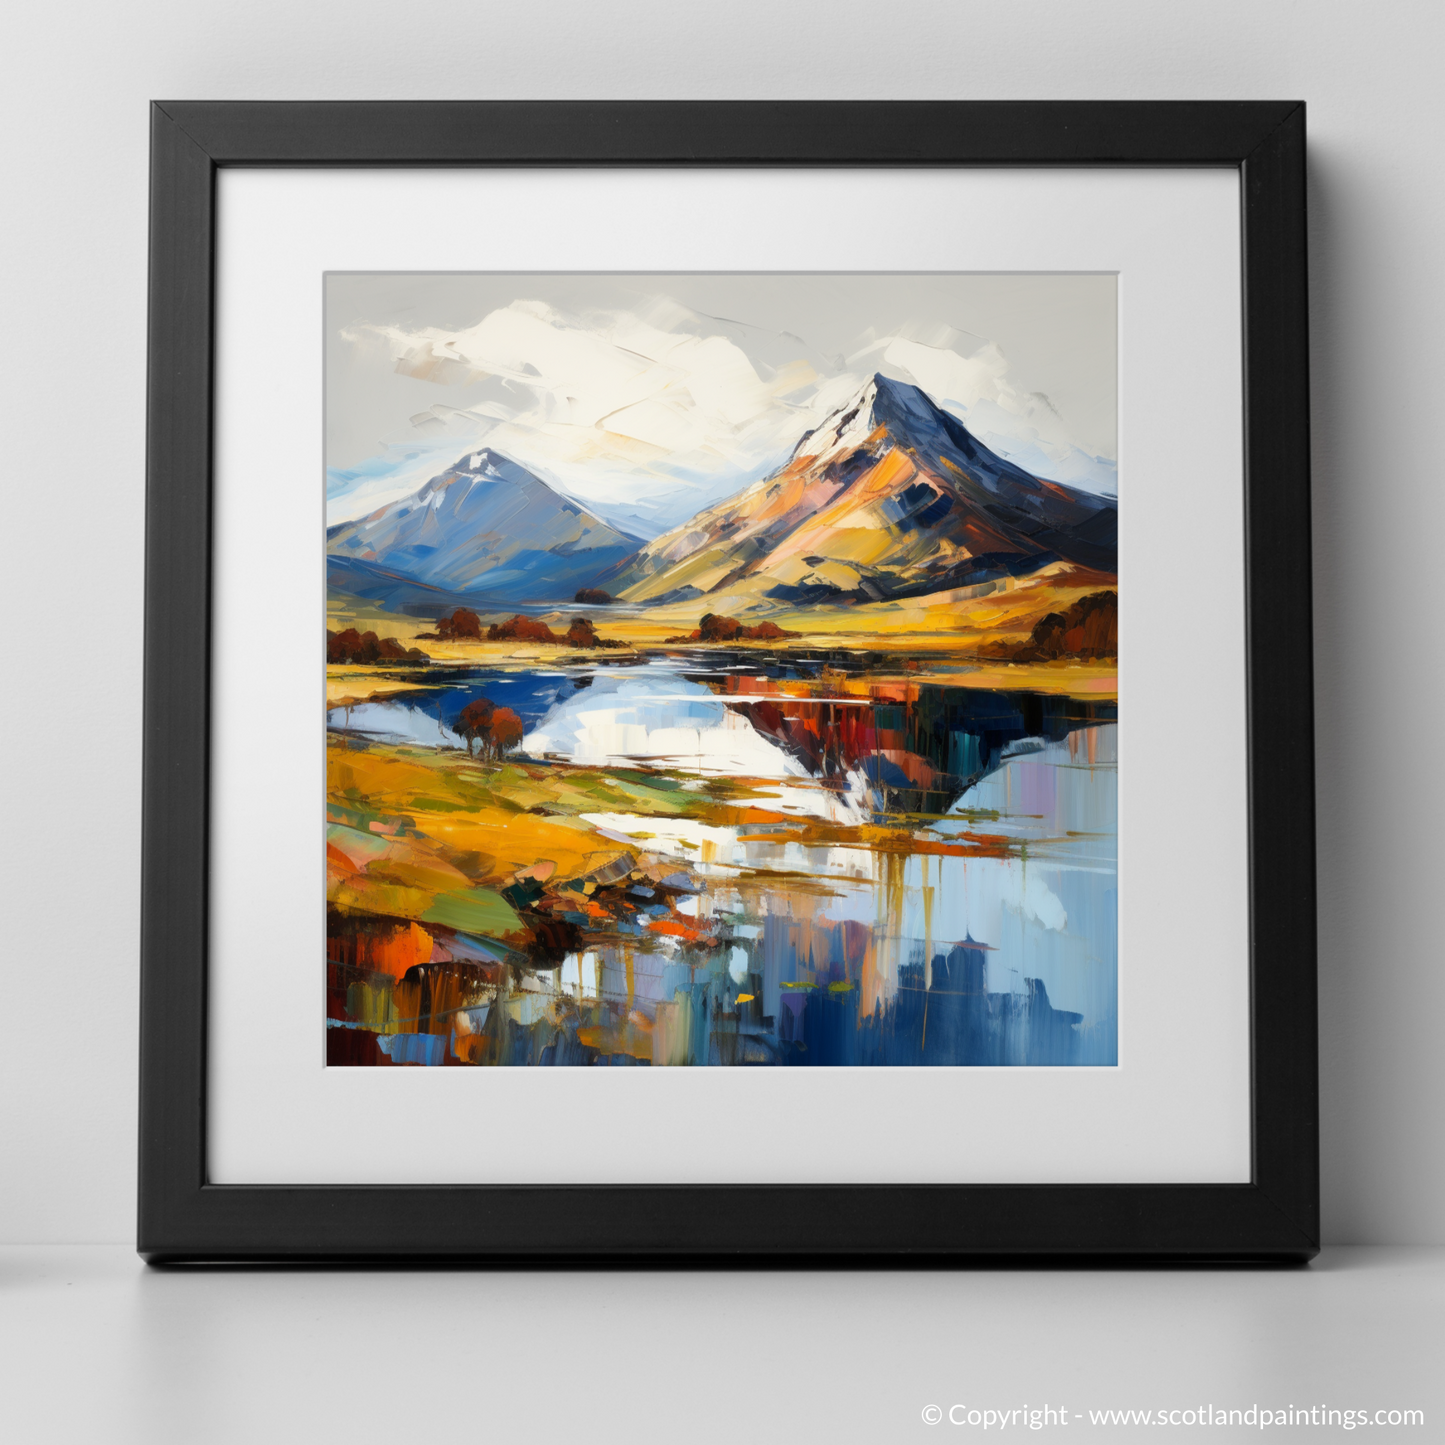 Art Print of Ben Vorlich (Loch Lomond) with a black frame